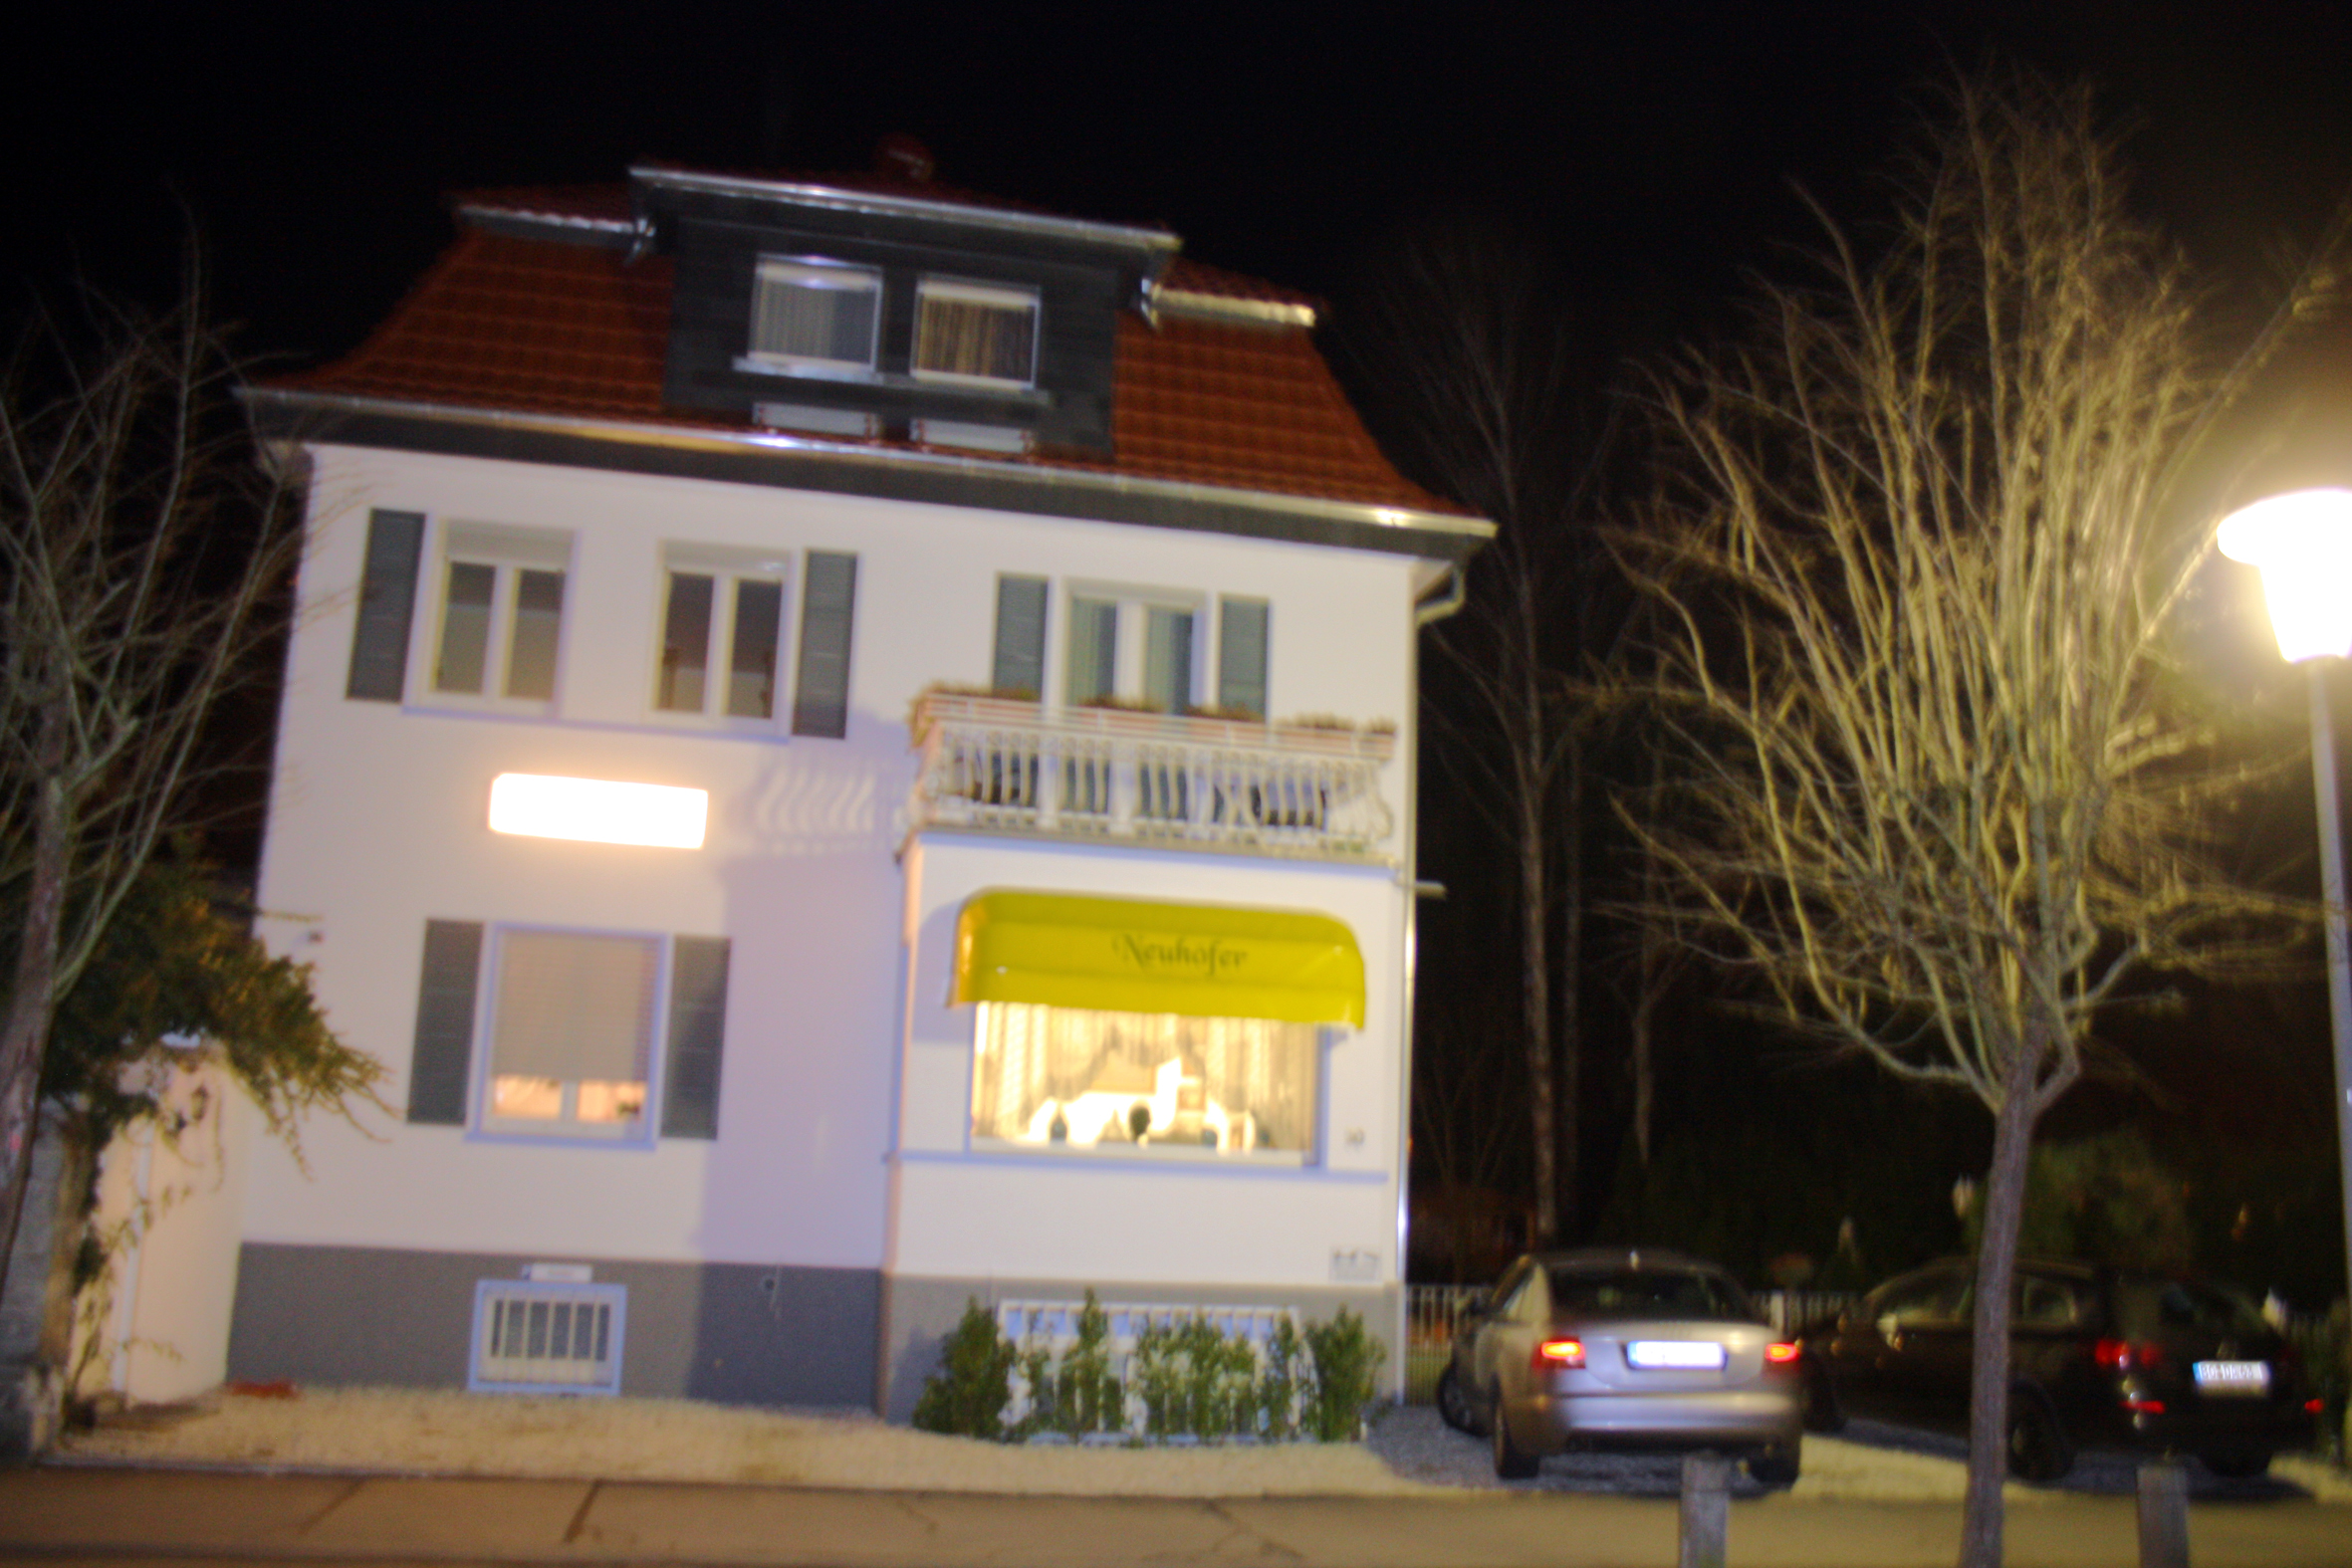 Hotel Neuhöfer, Bad Nauheim.
